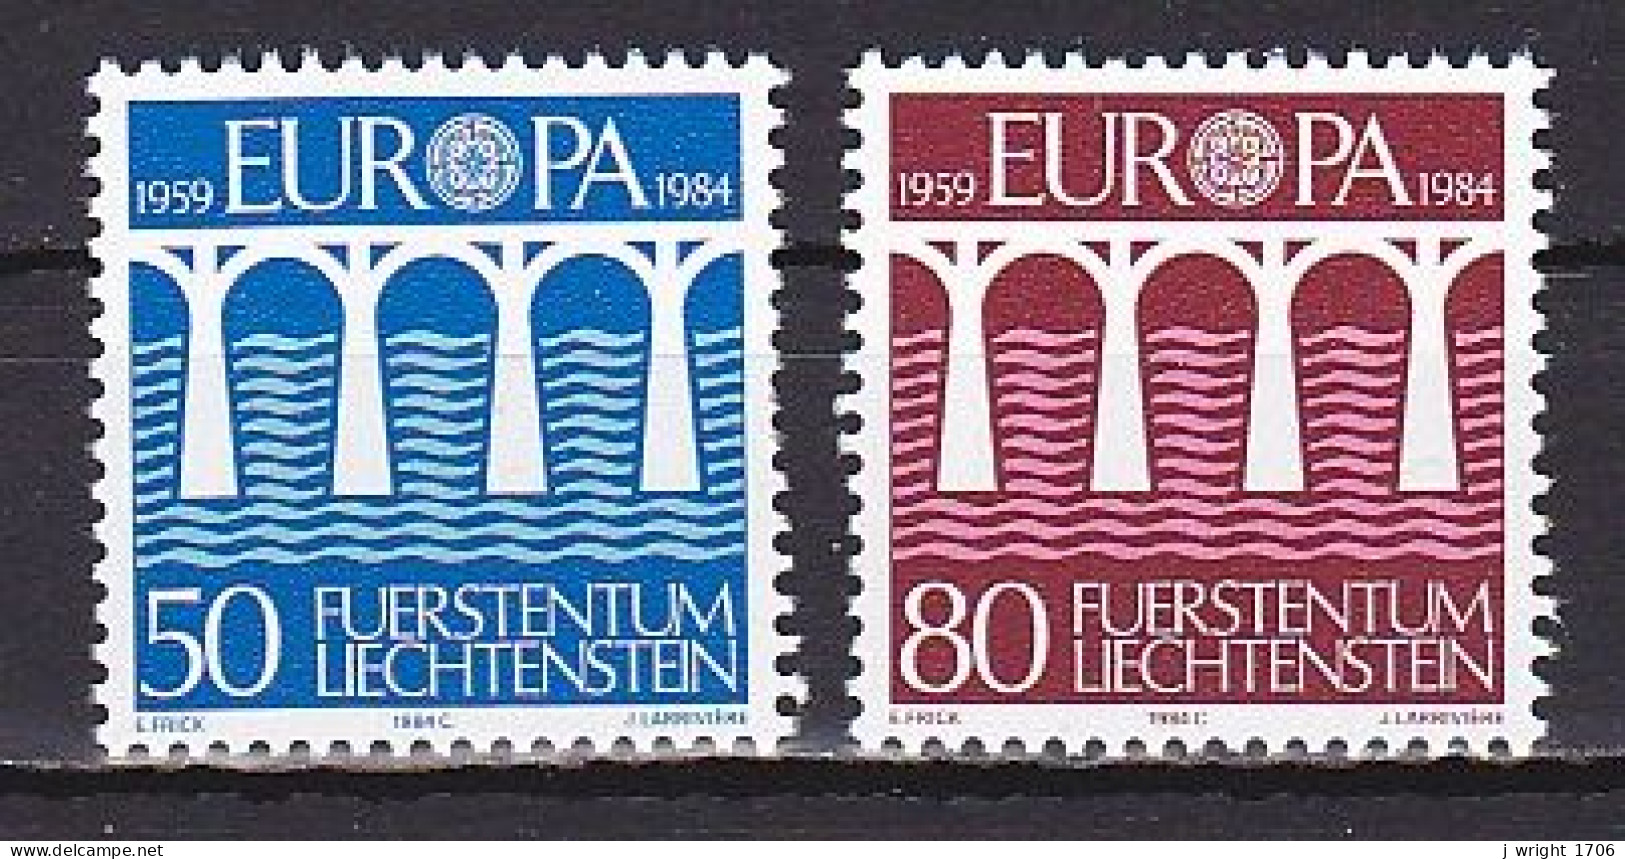 Liechtenstein, 1984, Europa CEPT, Set, MNH - Ungebraucht